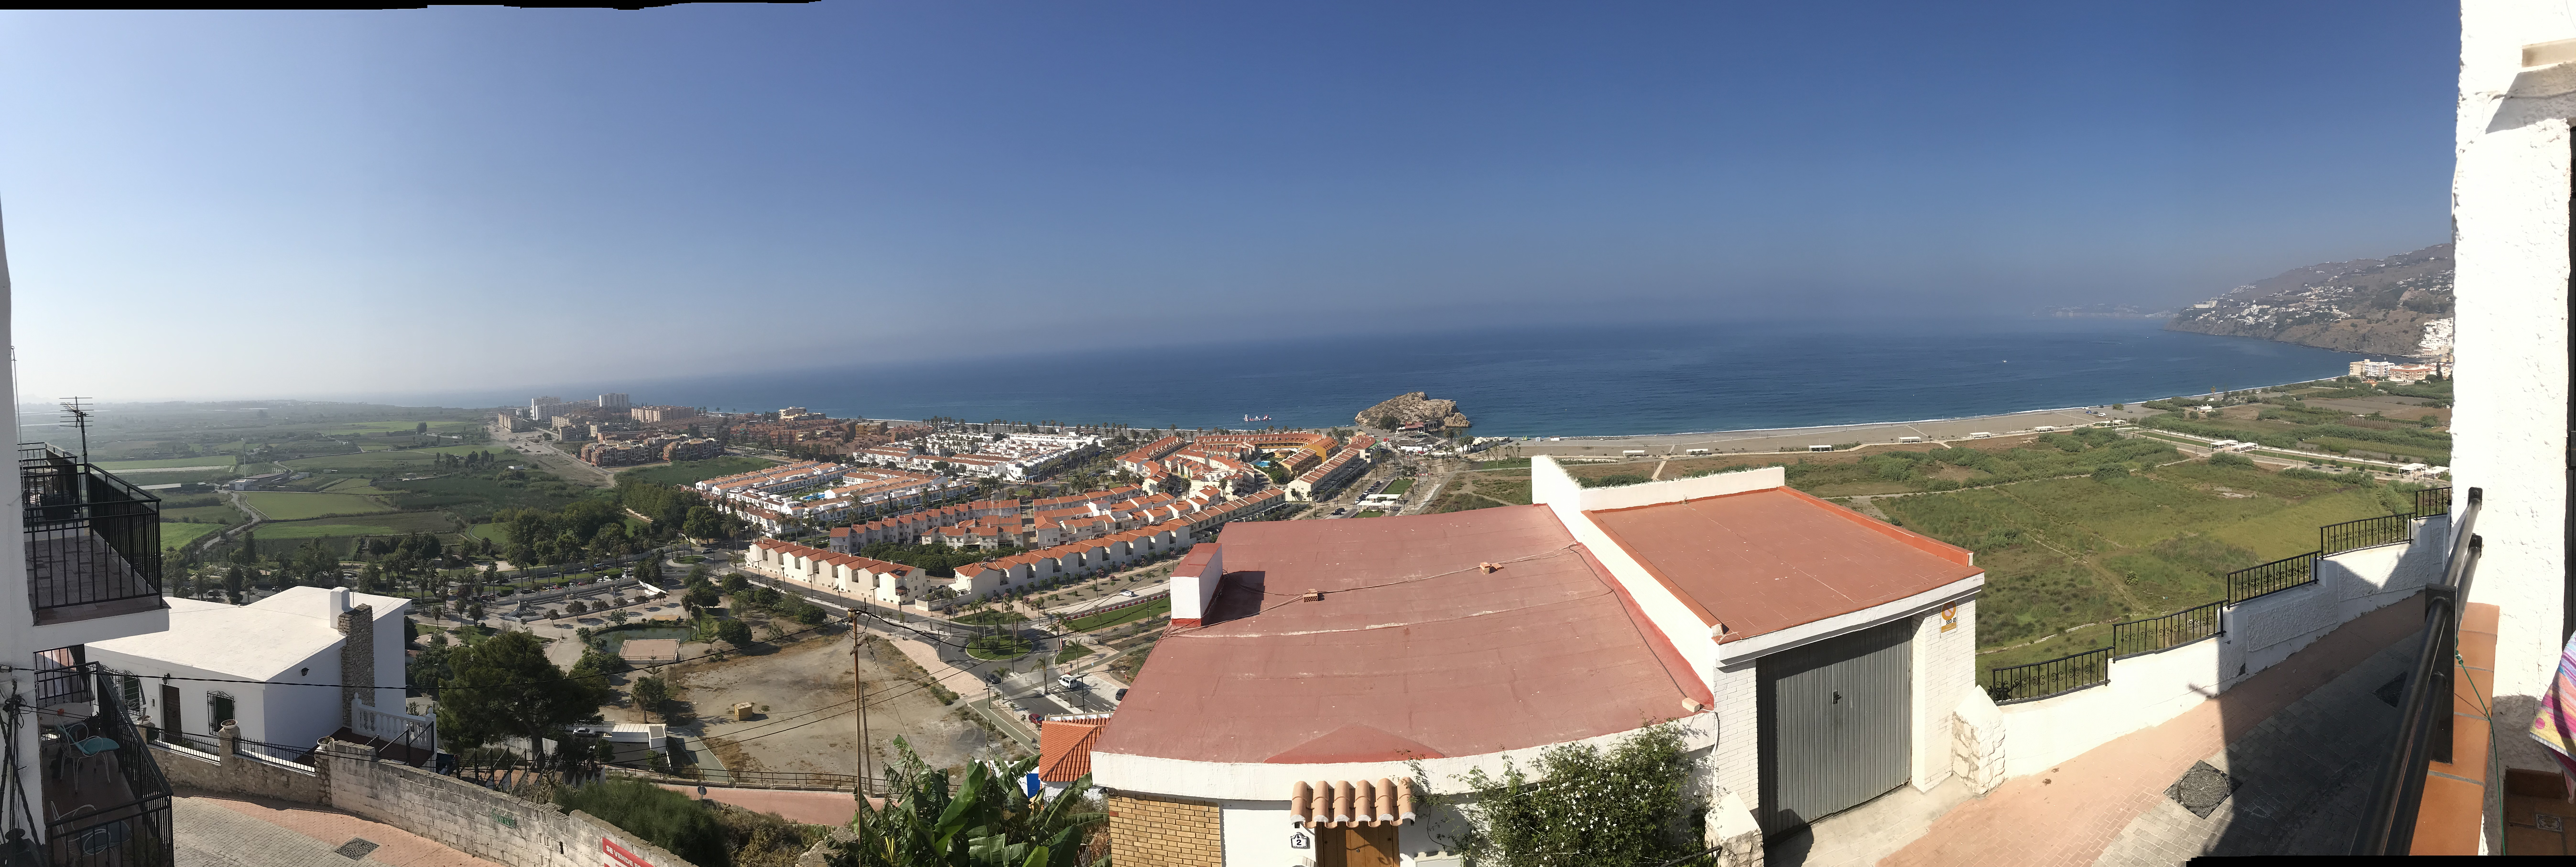 Ferie i Salobreña, en lille andalusisk by ved havet